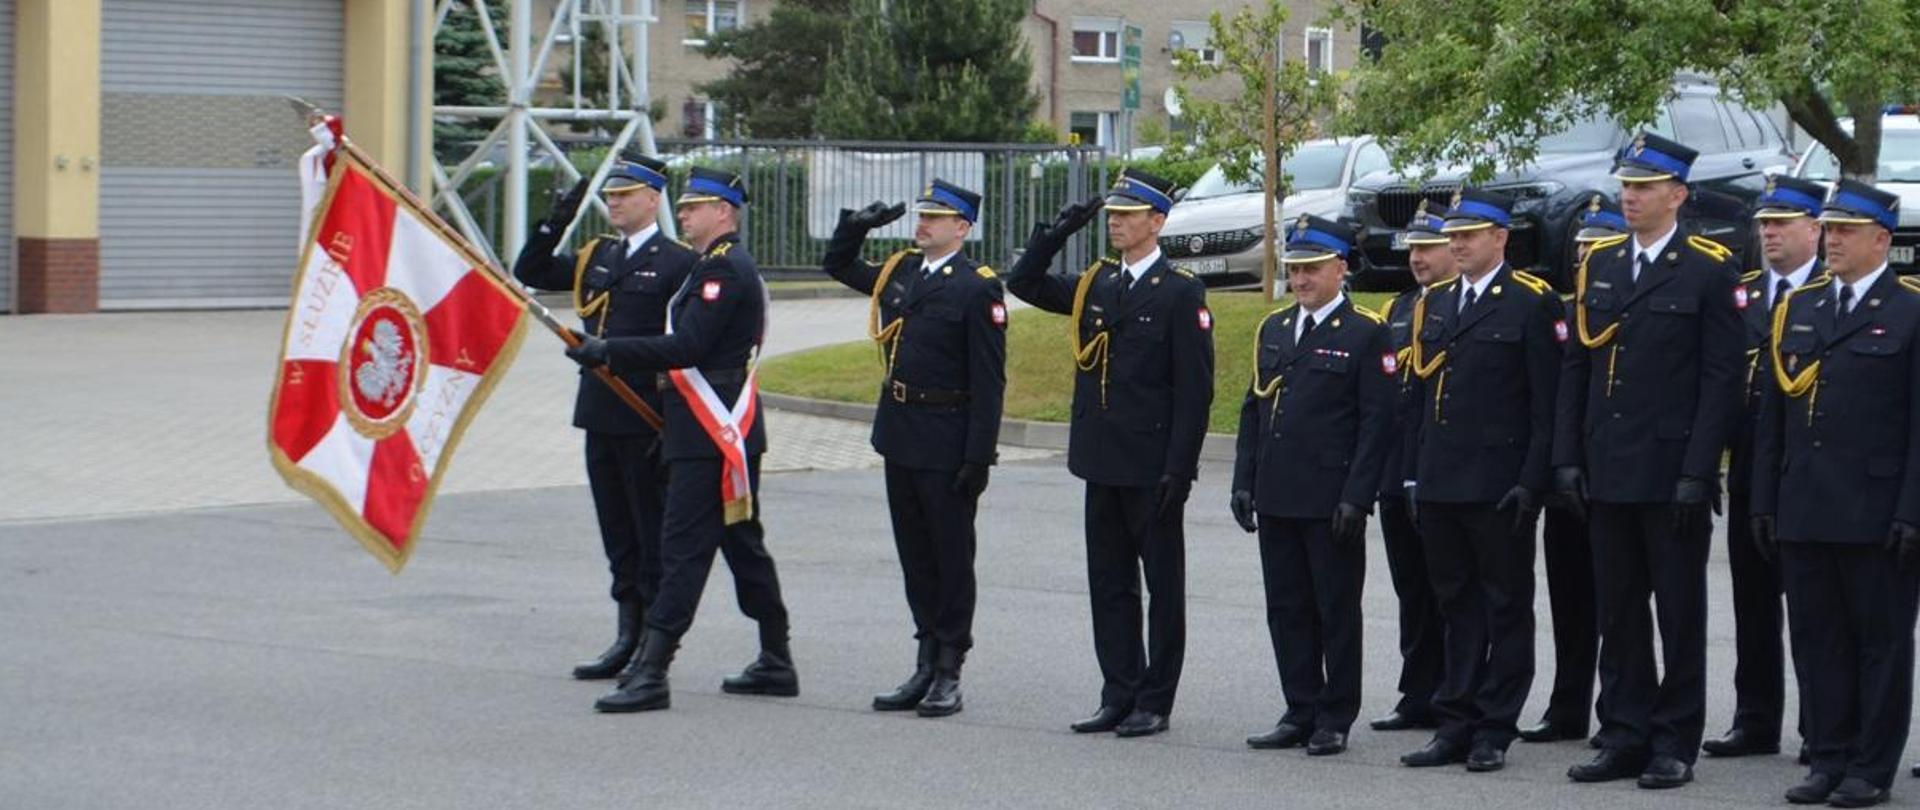 Na zdjęciu widoczny pododdział pożarniczy Komendy Powiatowej Państwowej Straży Pożarnej w Głubczycach w dwuszeregu podczas oddawania honory w związku z odgrywaniem Hymnu Państwowego.